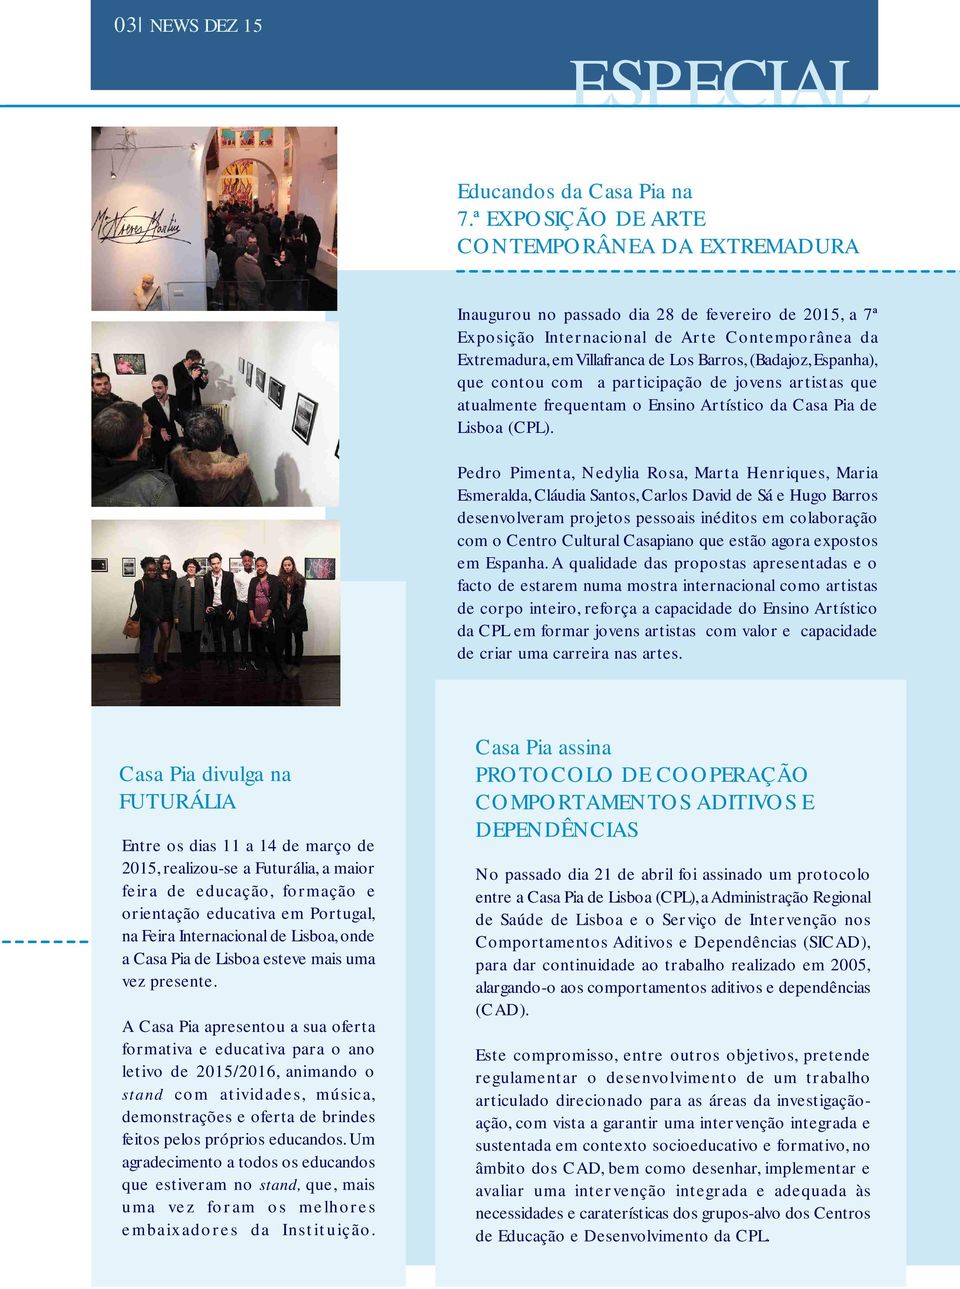 (Badajoz, Espanha), que contou com a participação de jovens artistas que atualmente frequentam o Ensino Artístico da Casa Pia de Lisboa (CPL).